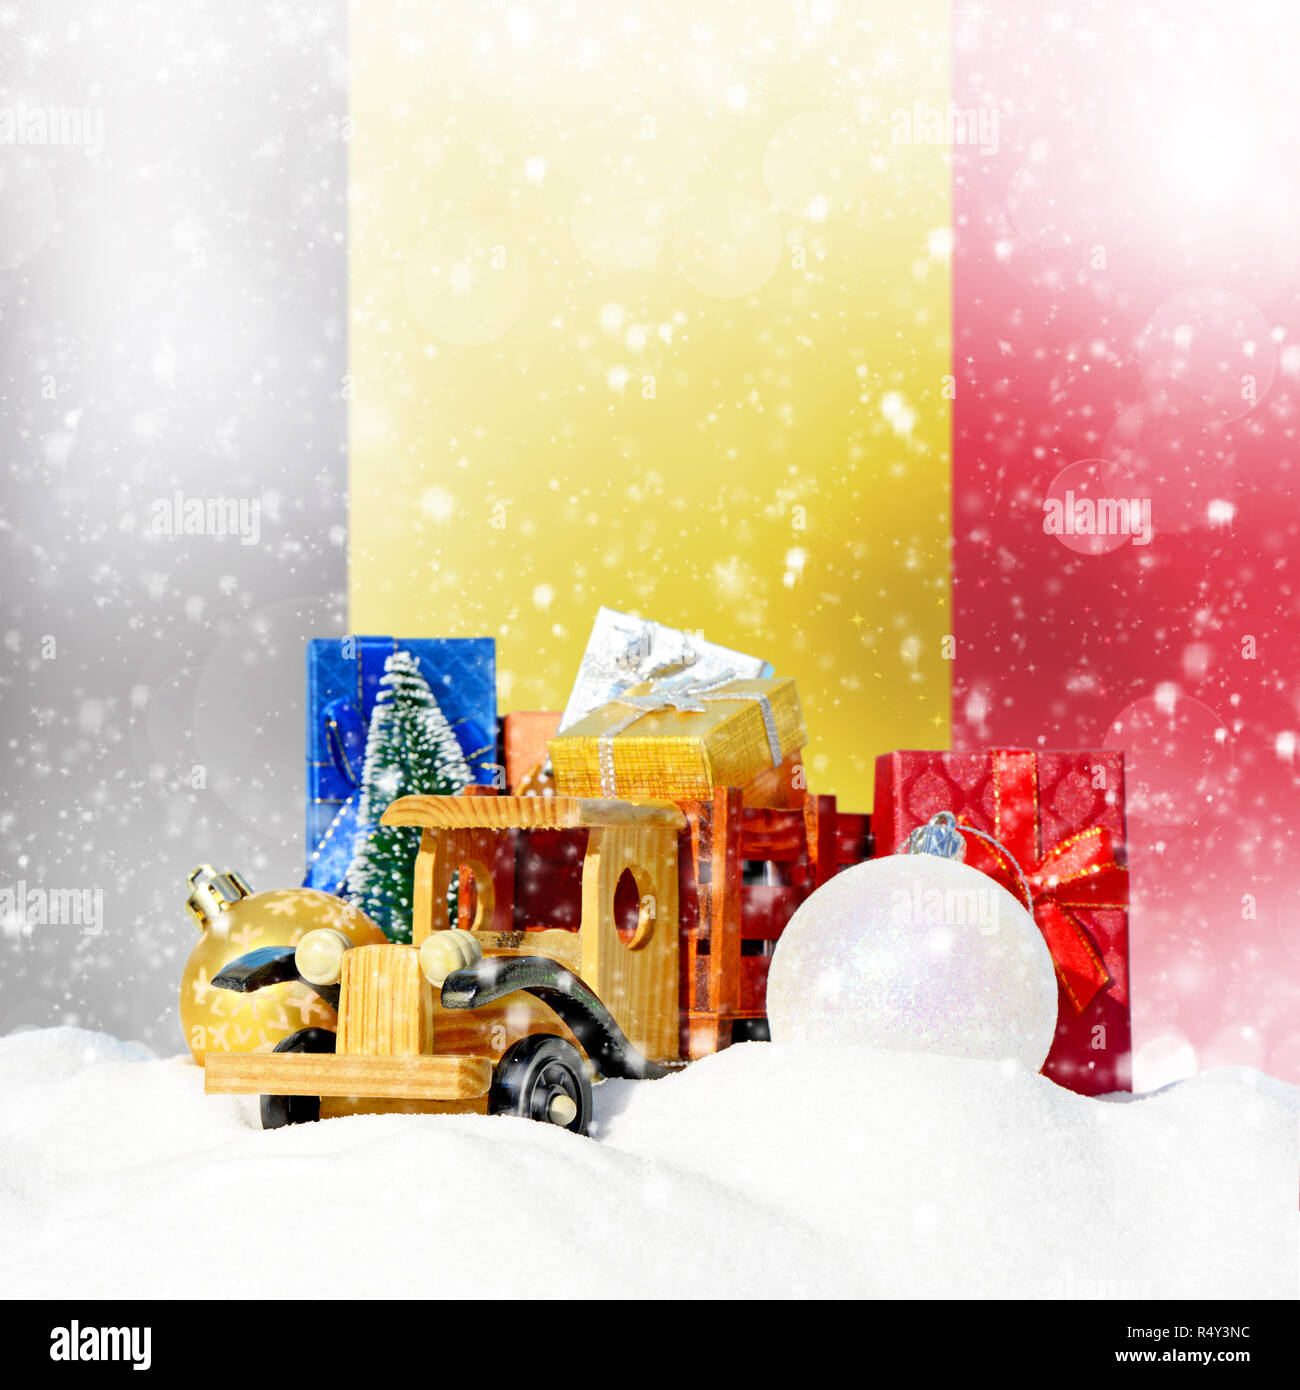 Weihnachten Hintergrund. Spielzeug-LKW mit Geschenken, Neues Jahr Tanne, Kugeln im Schneetreiben und belgischen Flagge Stockfoto